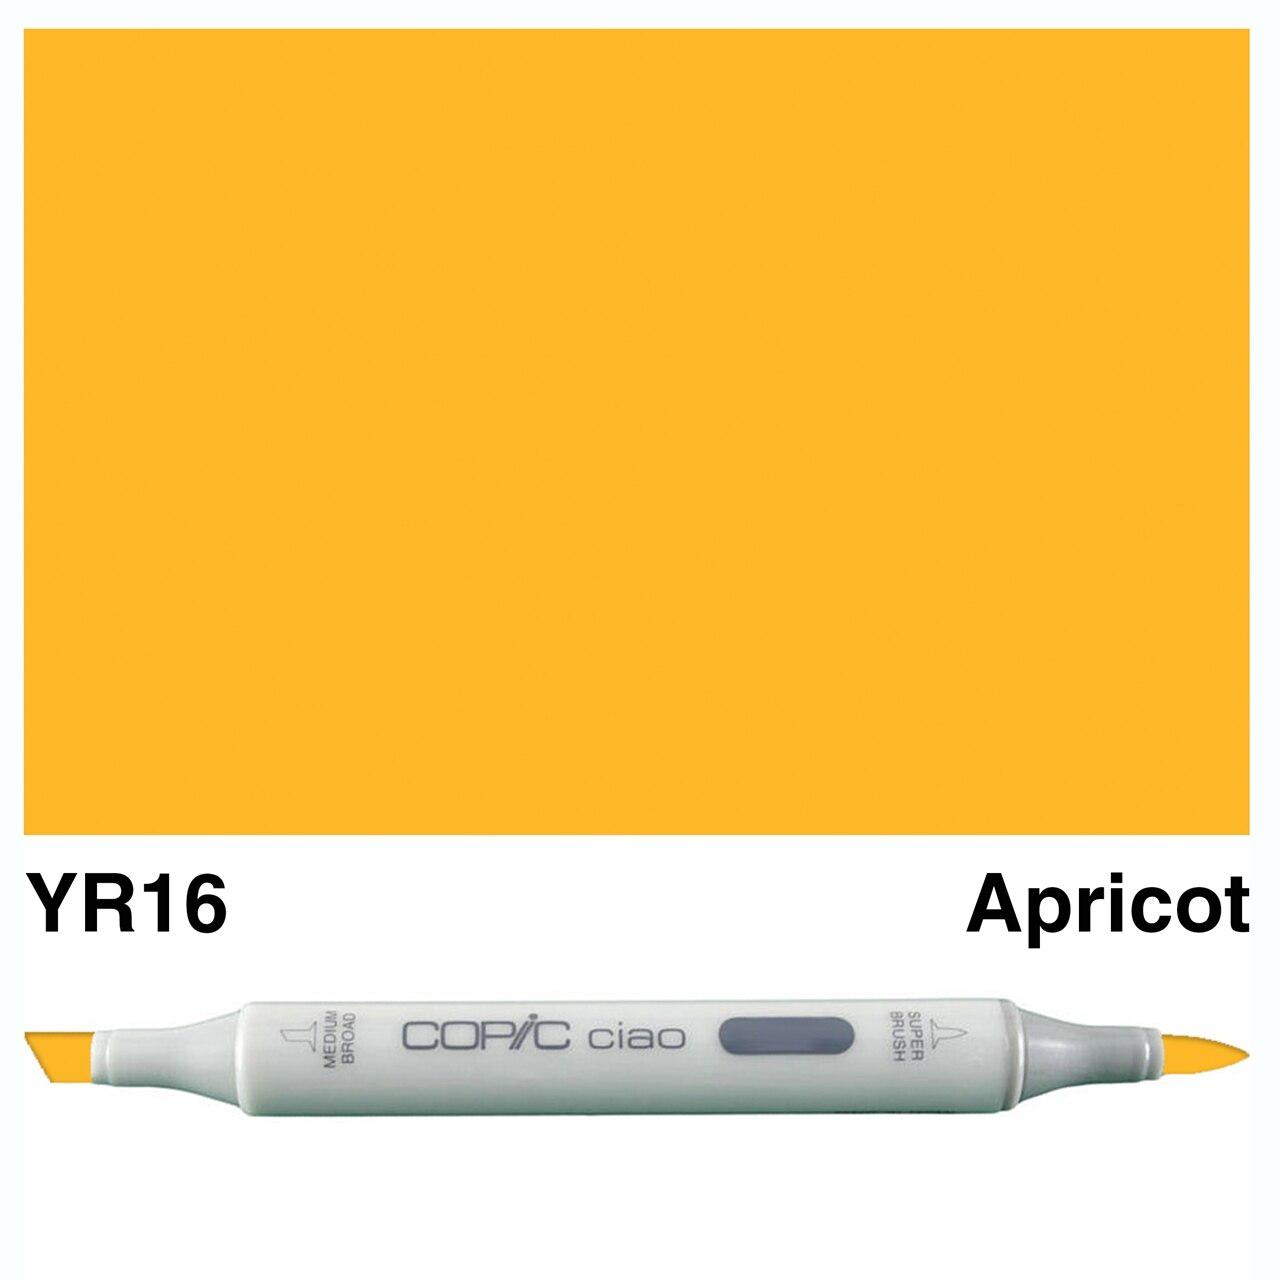 Copic - Ciao Marker - Apricot - YR16-ScrapbookPal